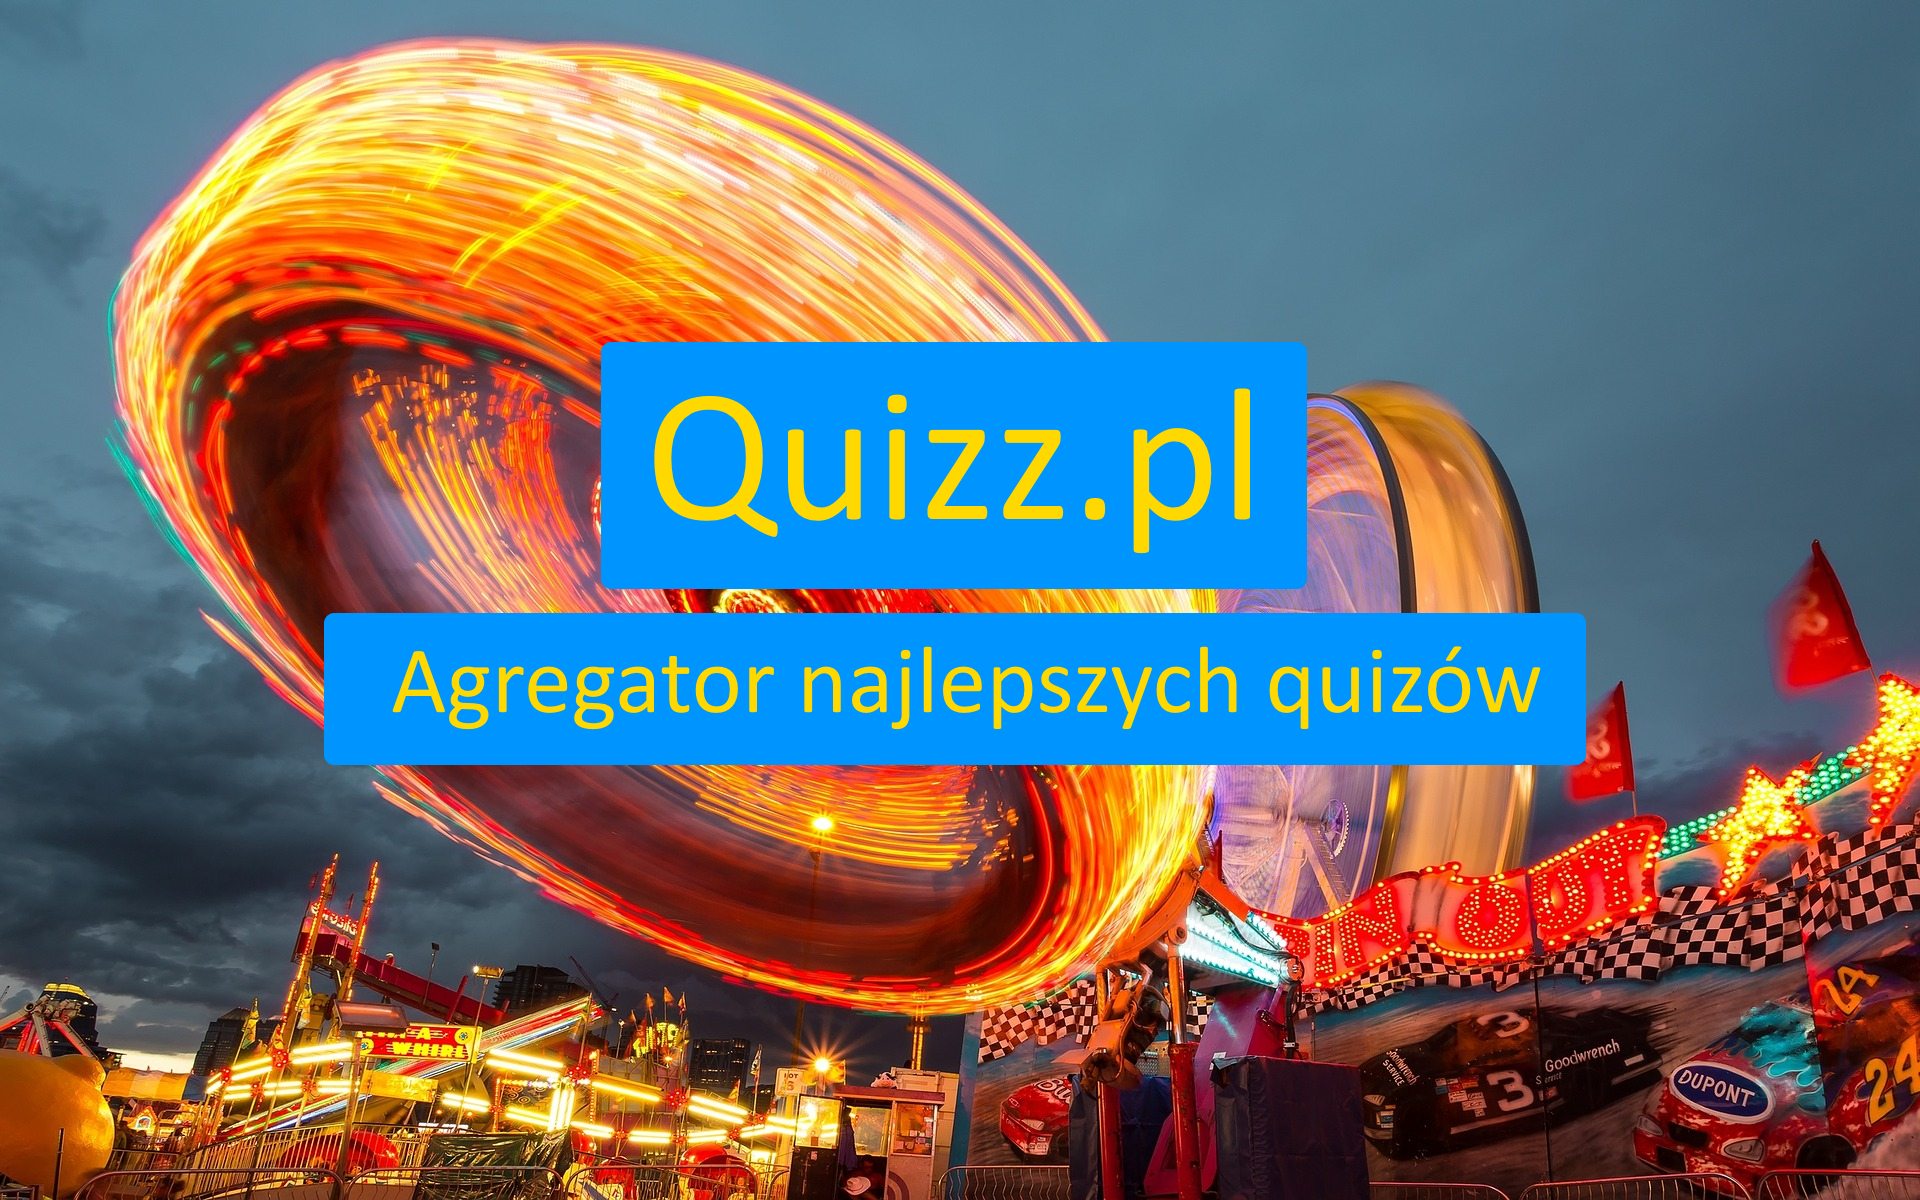 Imię - bezpłatne quizy, testy wiedzy i ankiety - www.quizz.pl